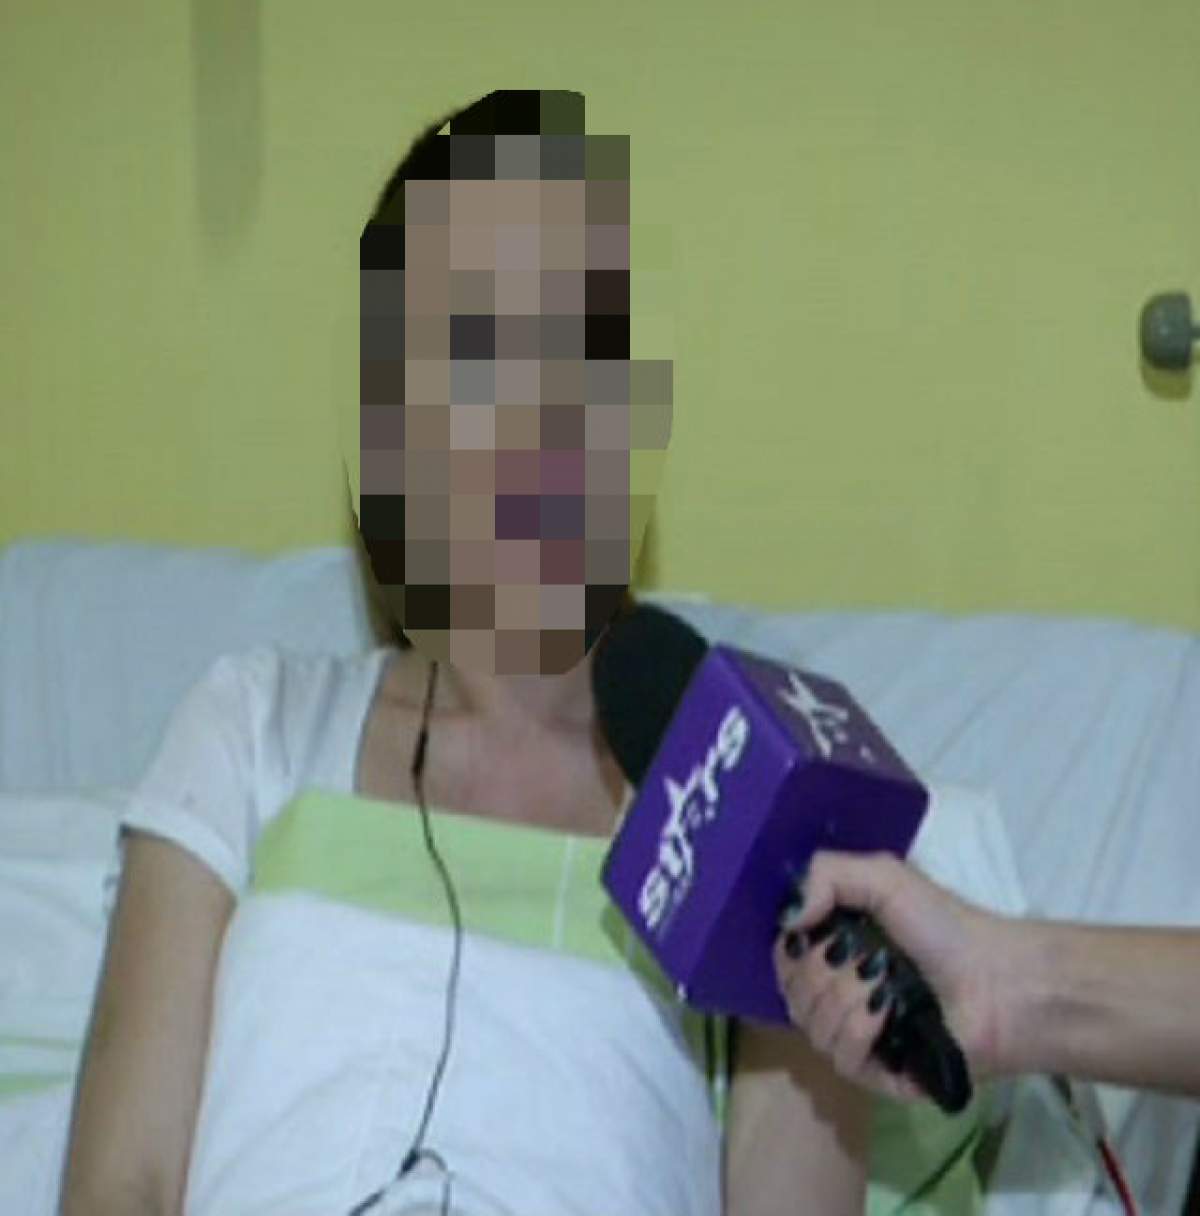 VIDEO / Prima apariţie pe patul de spital! Cum arată "operata anului" la câteva ore după intervenţie: "Am doi plasturi şi sunt vânătă"